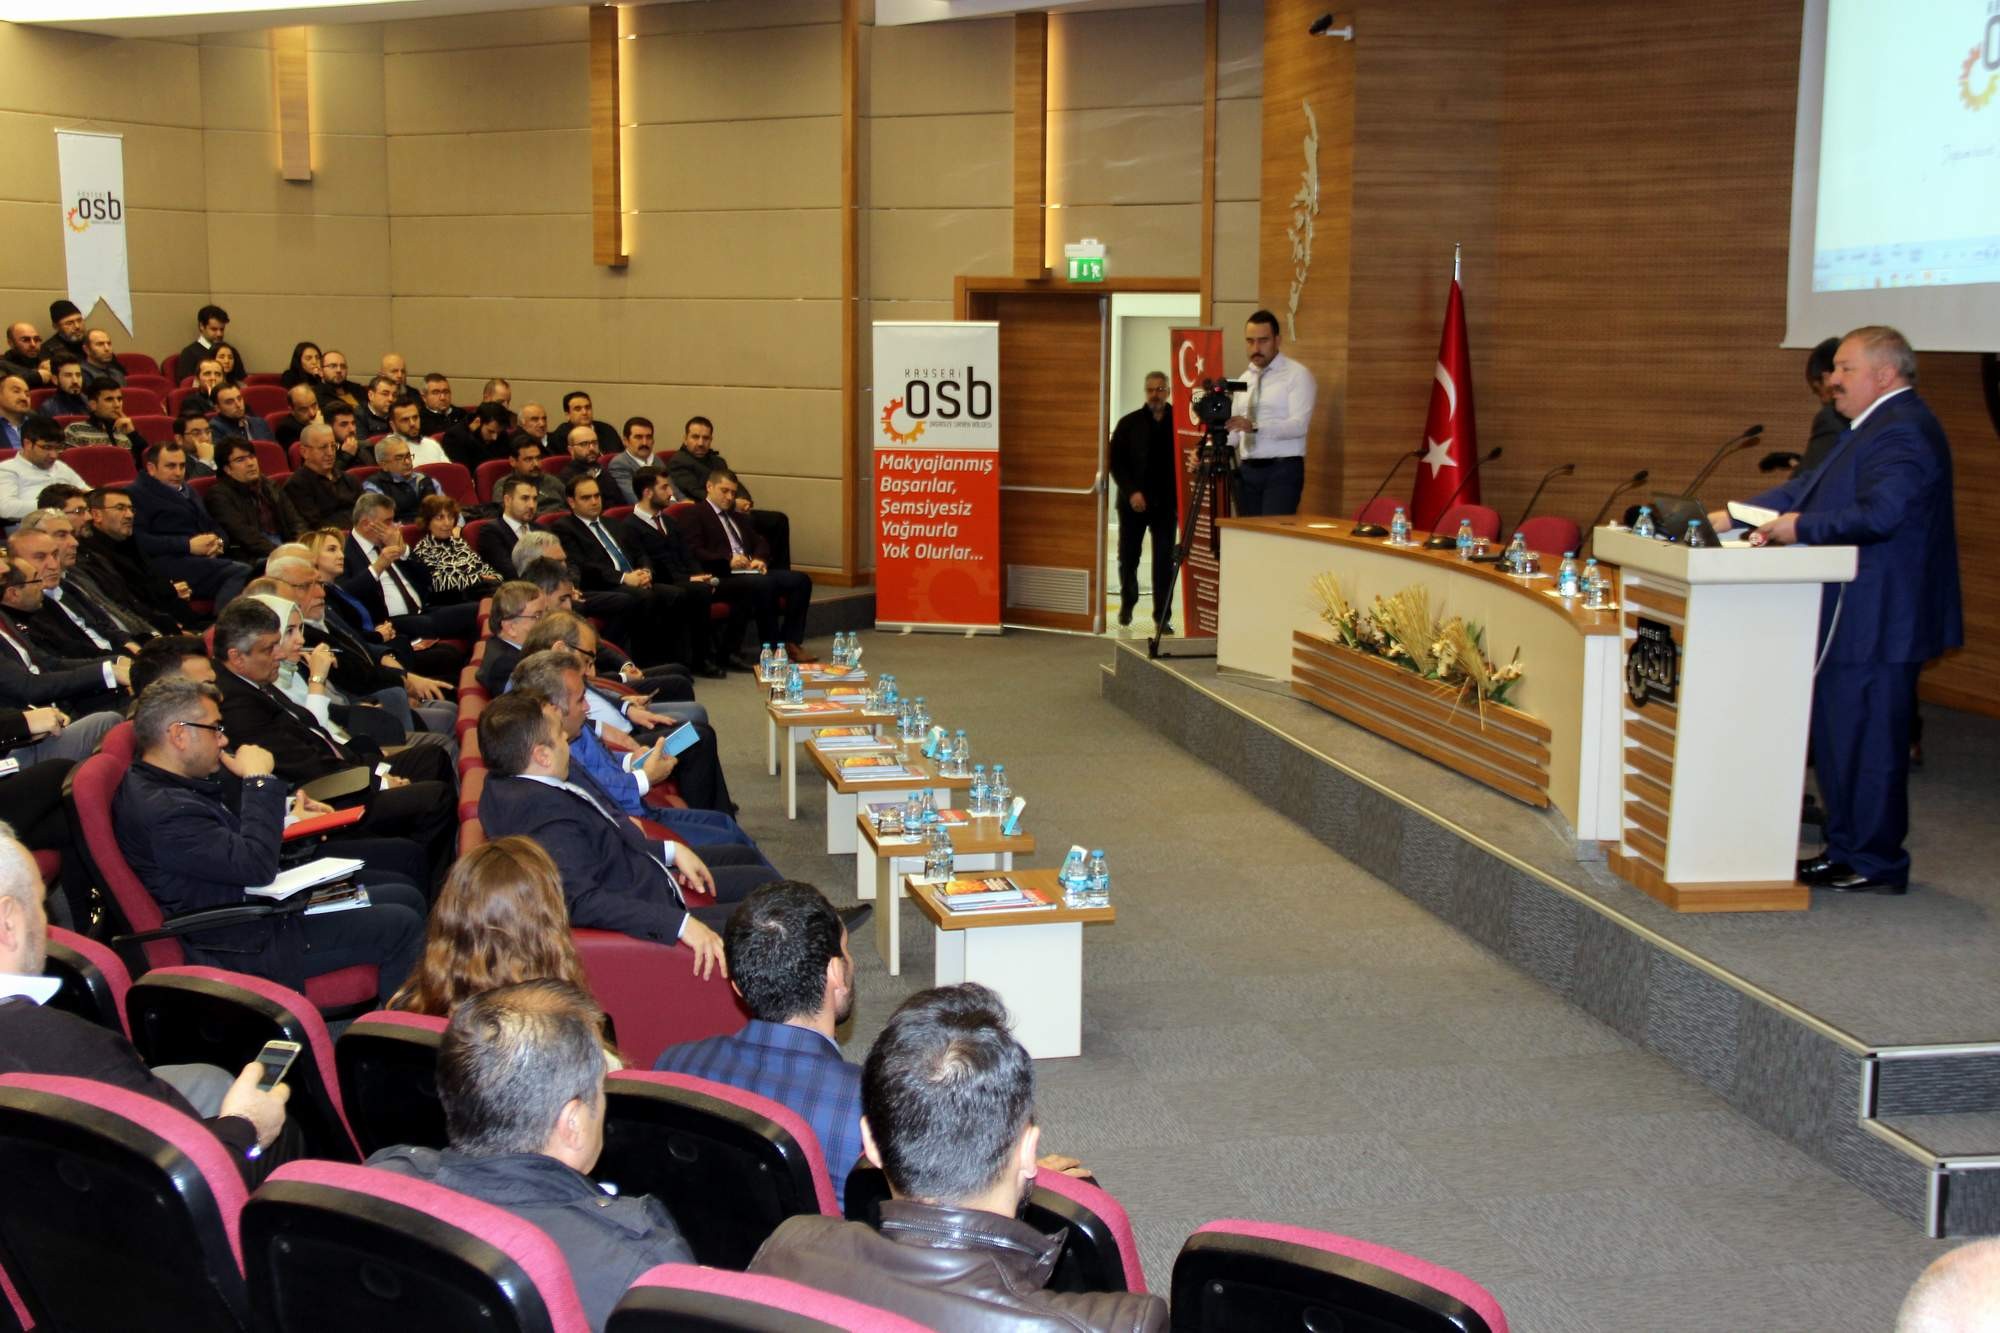 Kayseri OSB Yönetim Kurulu Başkanı Tahir Nursaçan: “Türkiye’nin marka OSB’si olmaya devam ediyoruz”